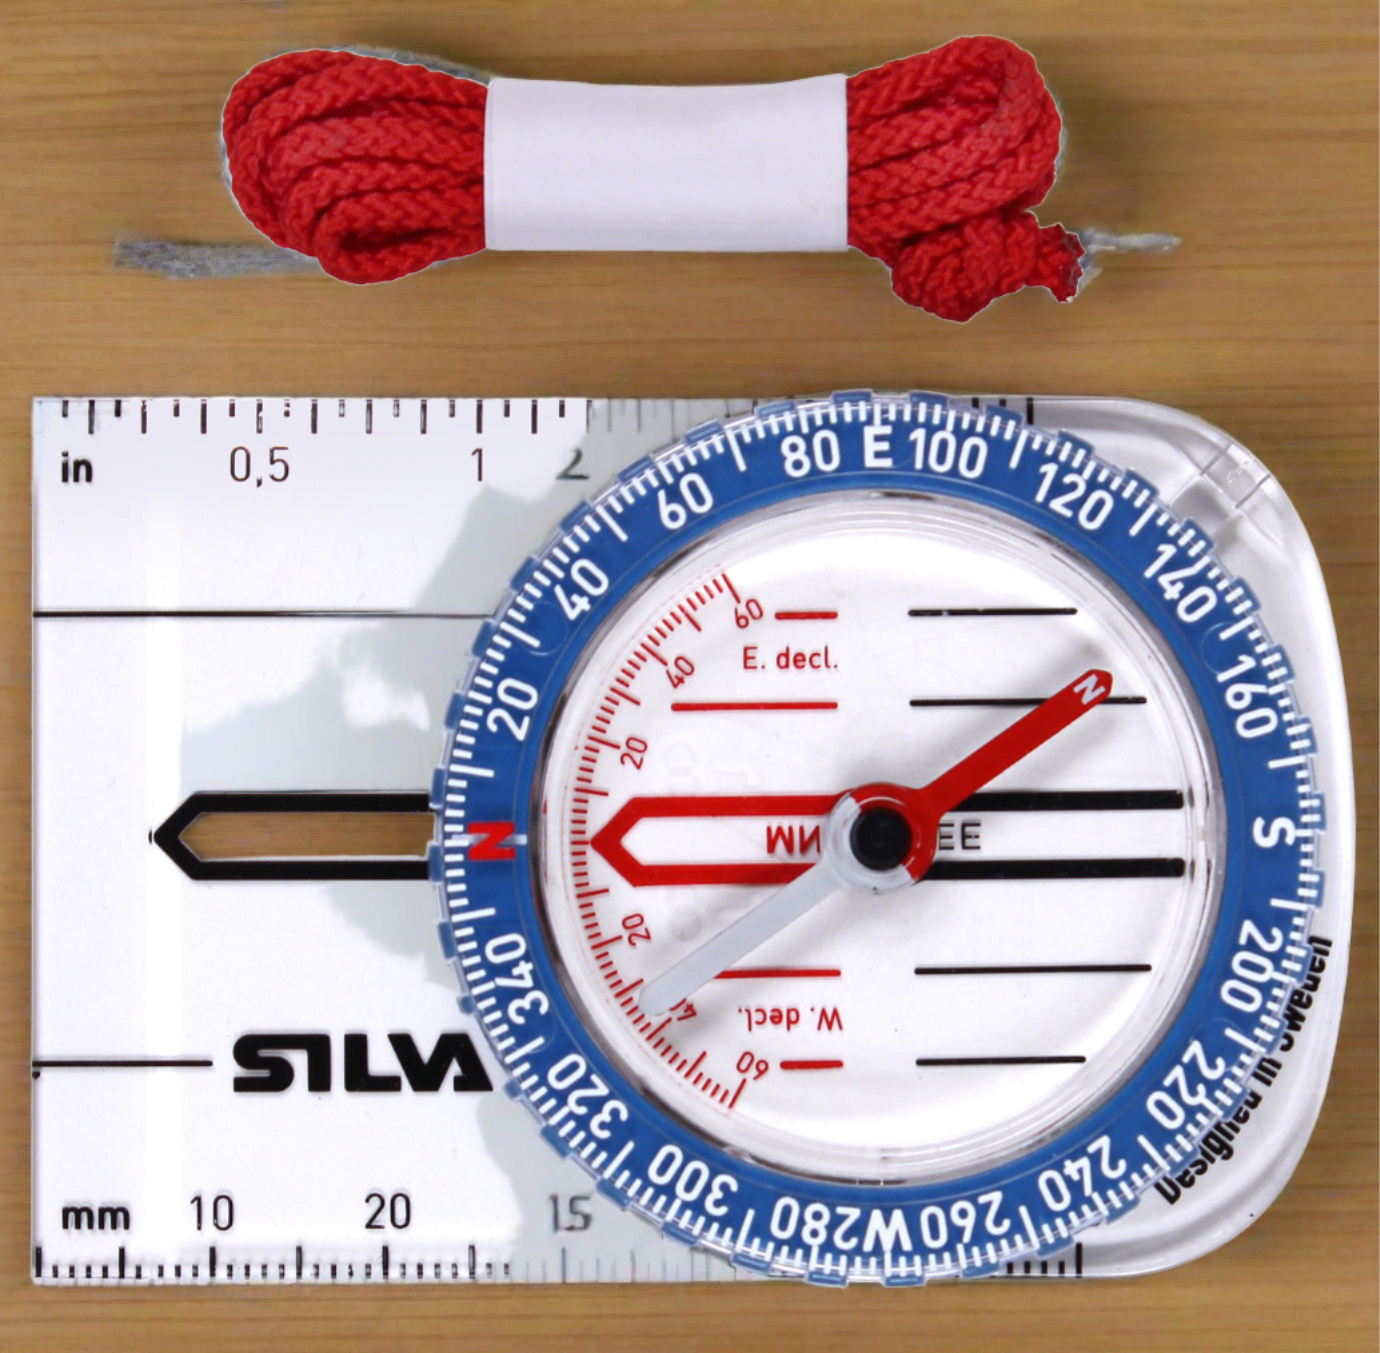 Compass - Silva Starter 1-2-3 Compass